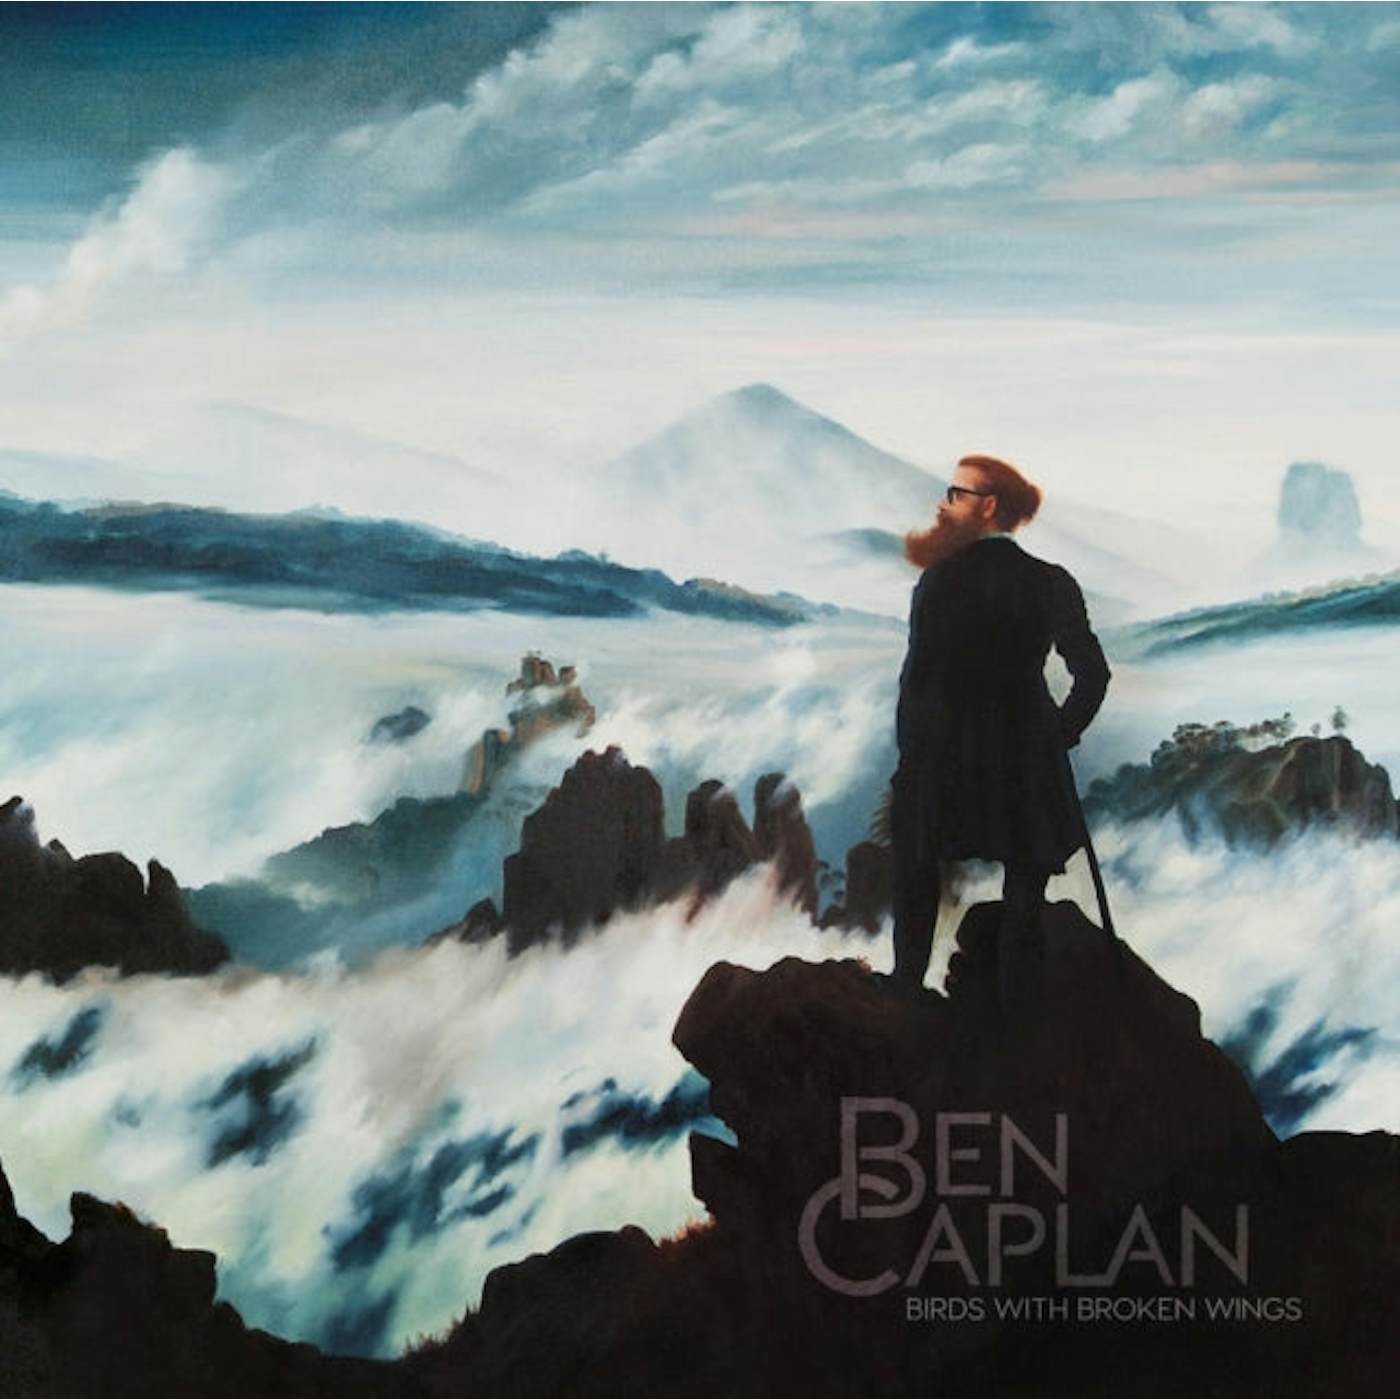  Ben Caplan LP - Birds With Broken Wings (Vinyl)